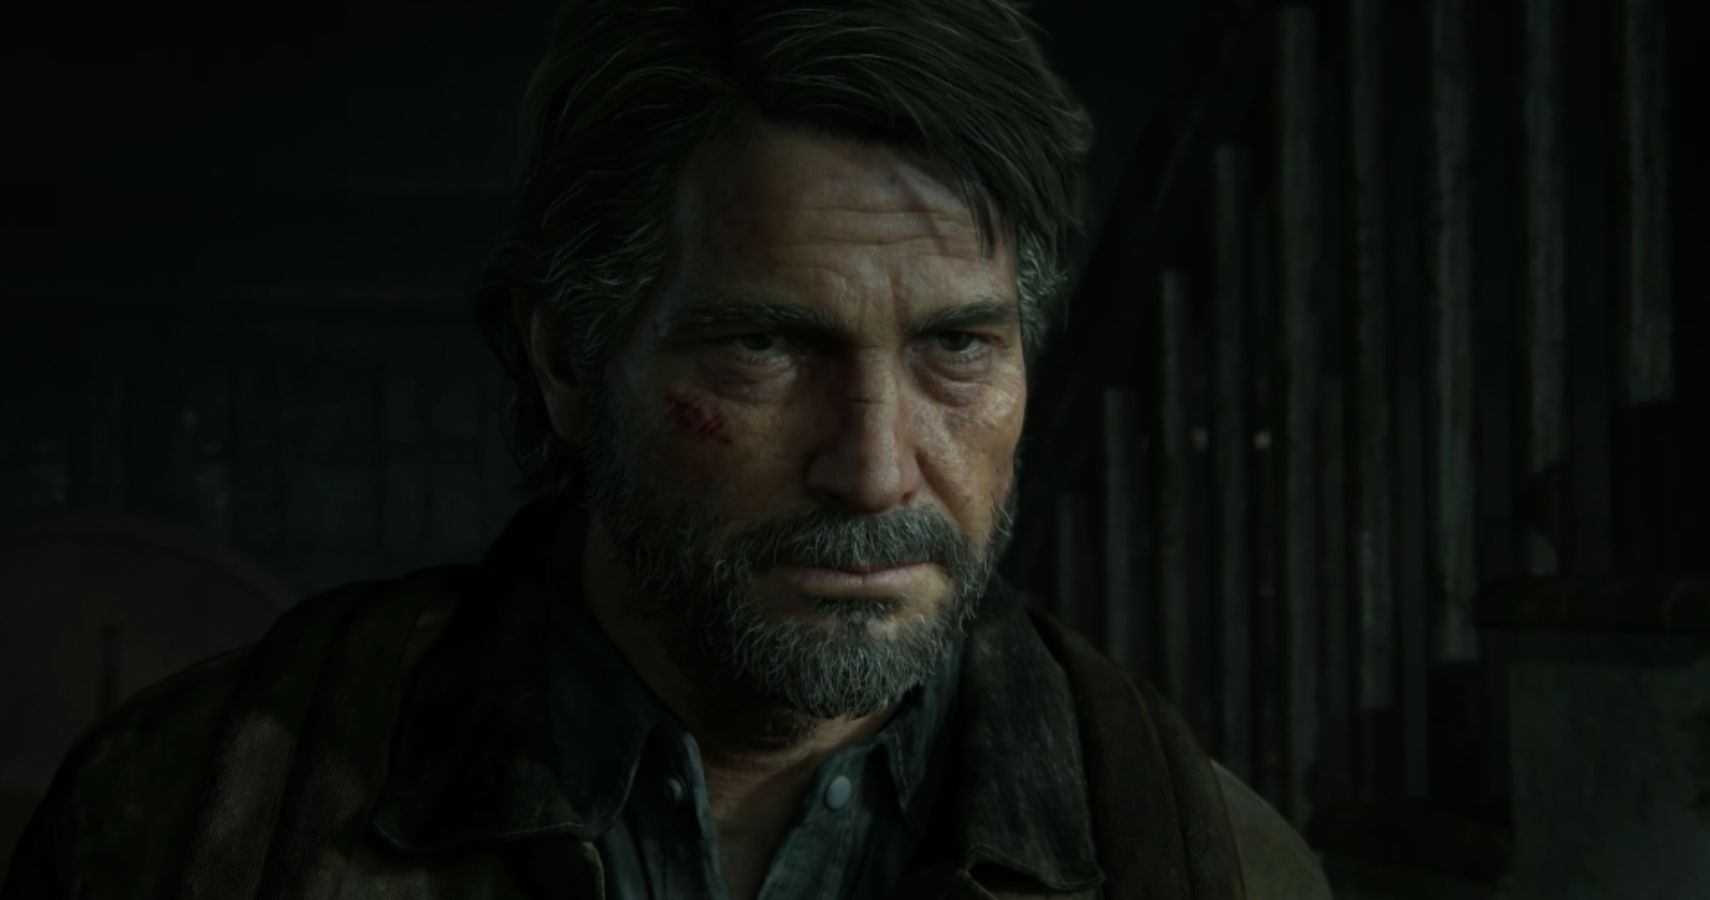 Joel on The Last of Us Part II